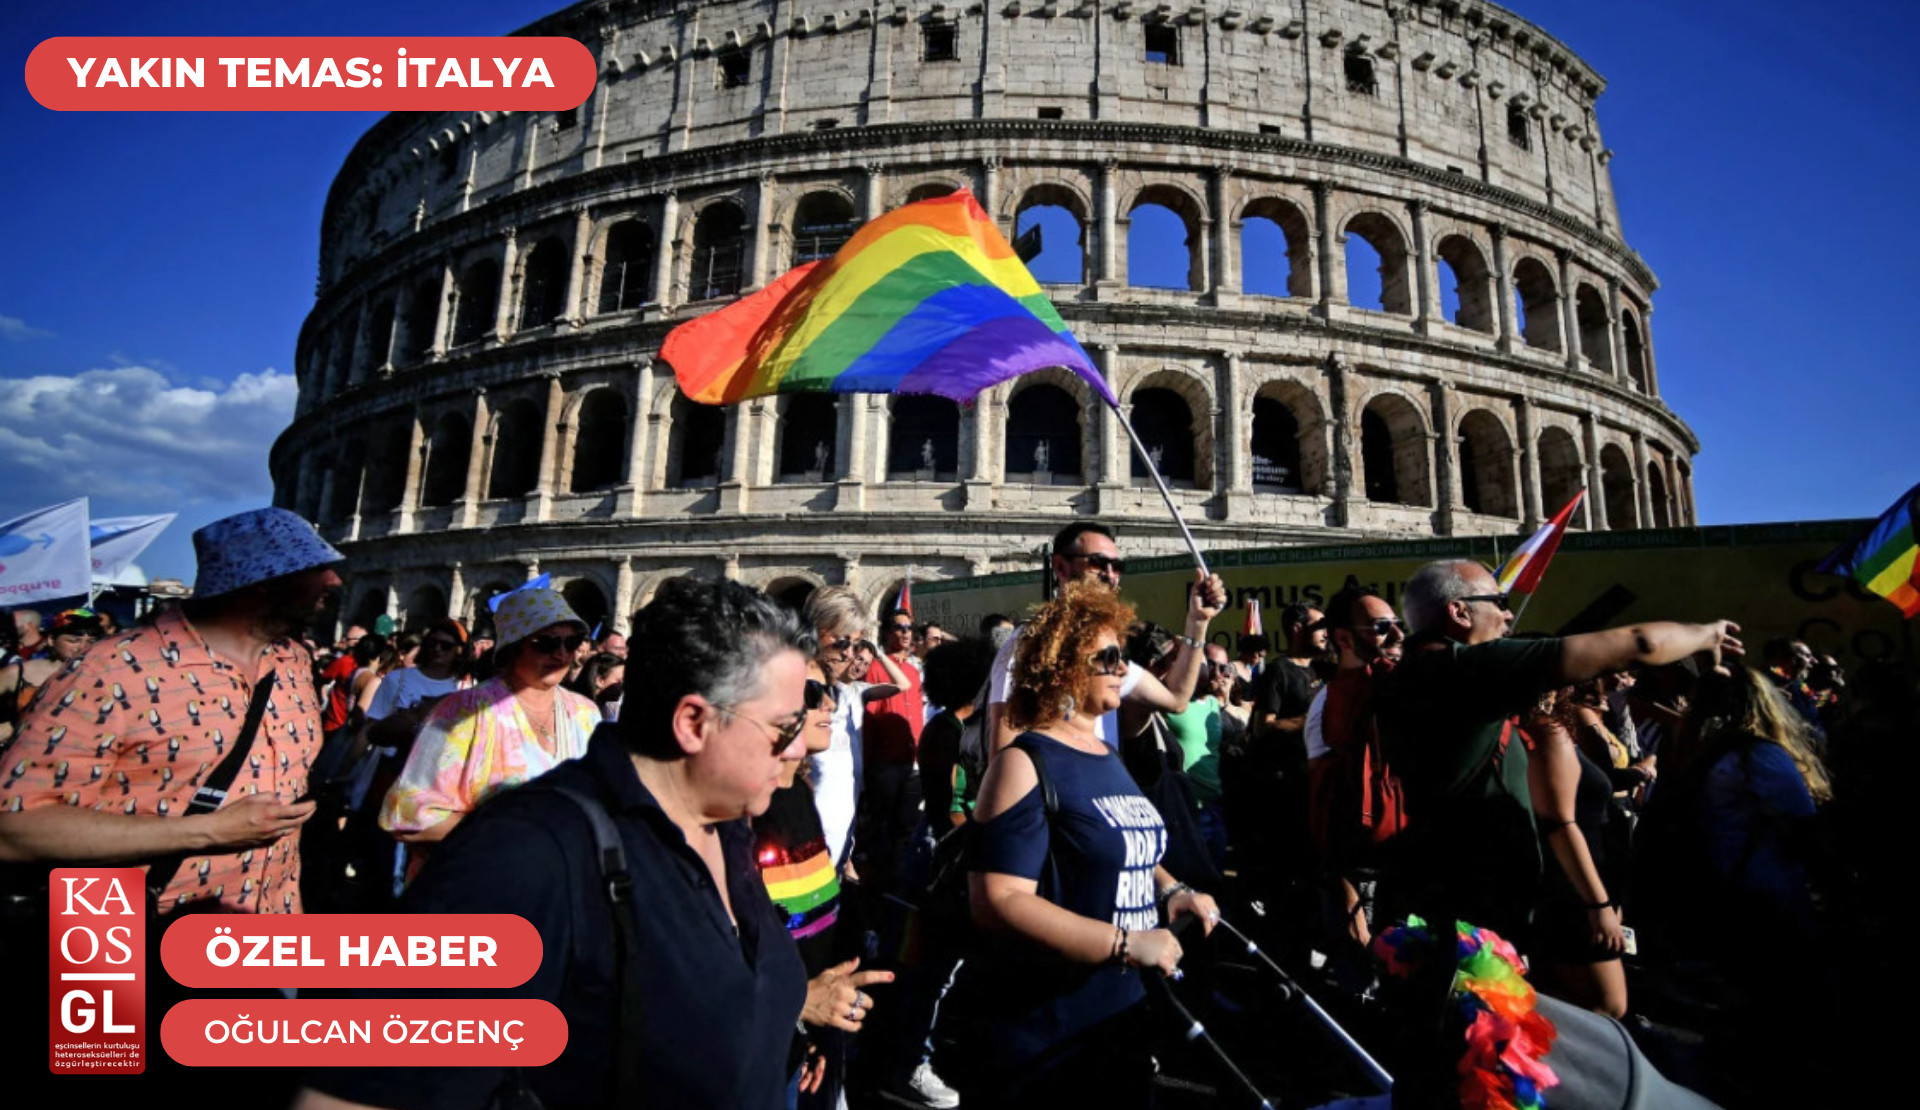 İtalya’nın faşizm nostaljisi: “İtalya’da LGBTİ+ hareketini ‘radikal’ solun tek ifadesi olarak gören yaygın bir retorik var” | Kaos GL - LGBTİ+ Haber Portalı Haber